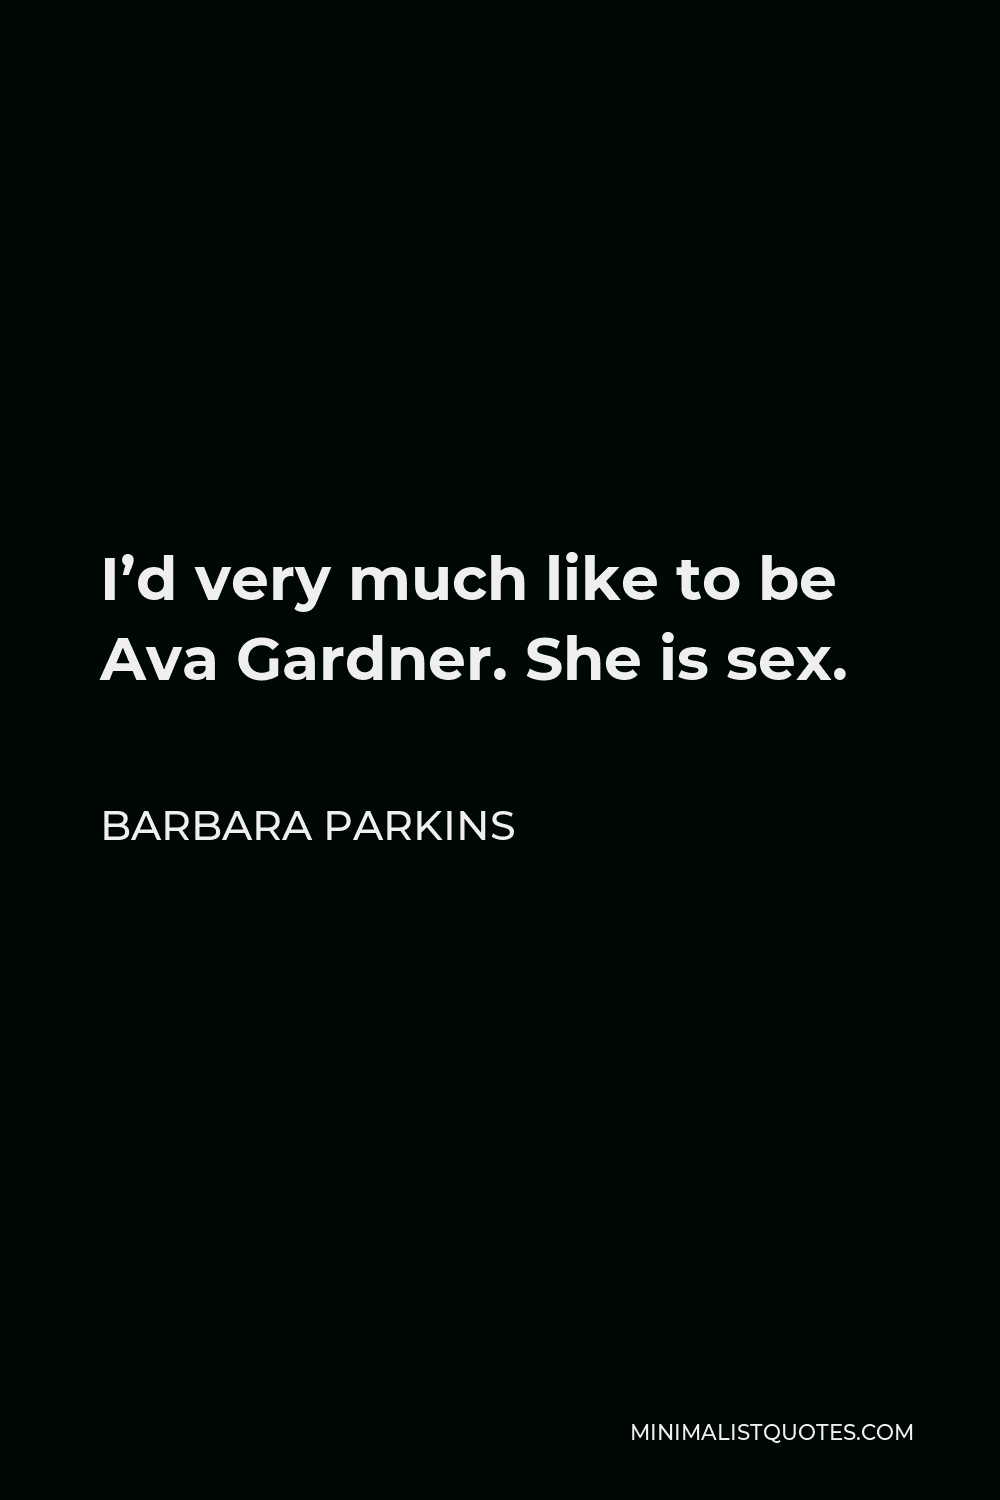 Barbara Parkins Quotes Minimalist Quotes